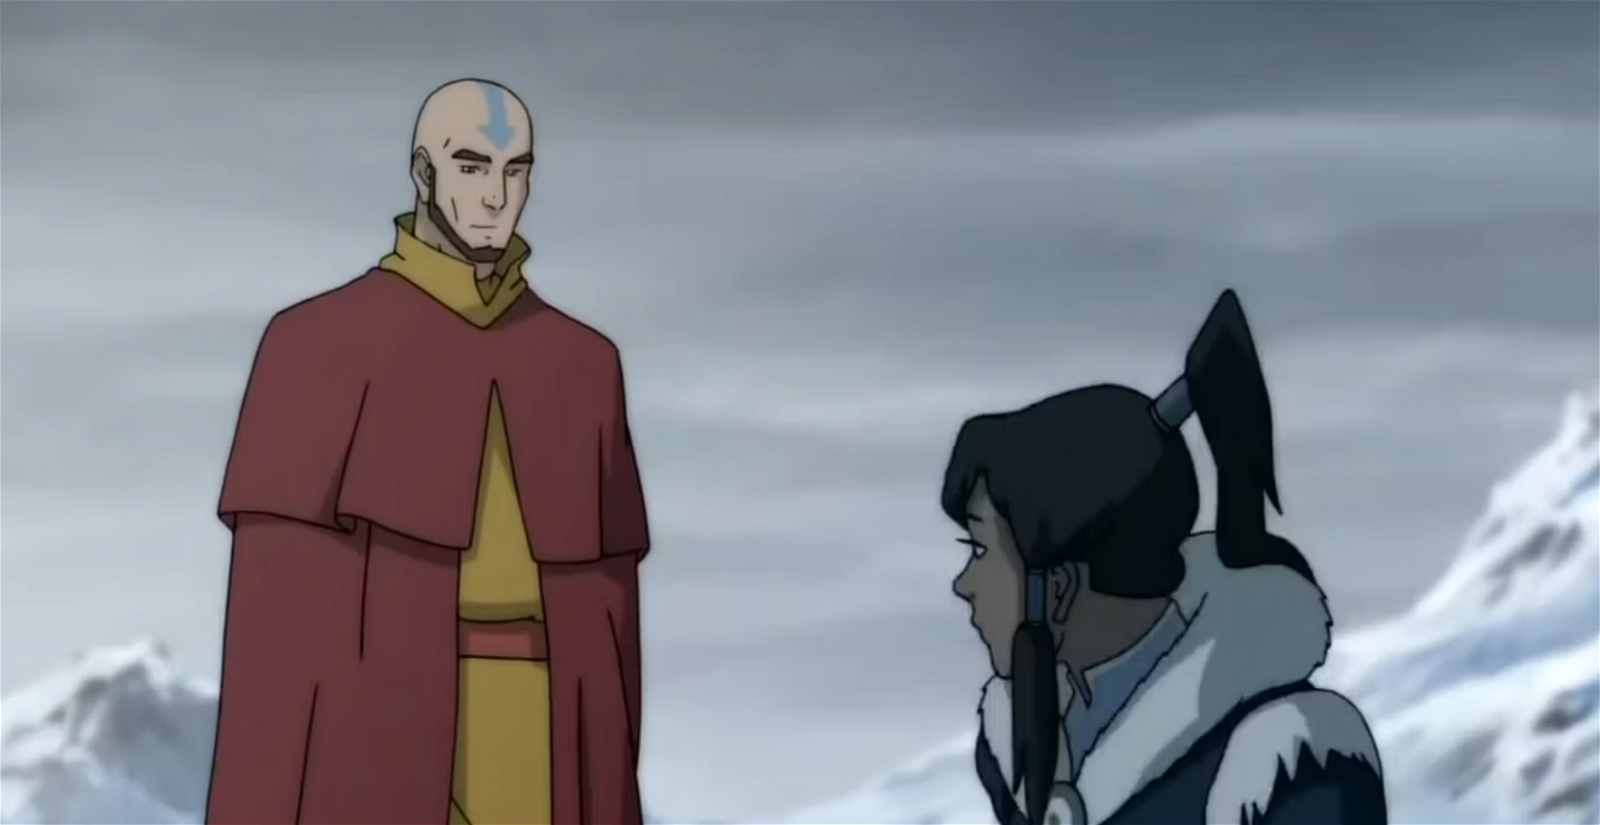 Aang and Korra in The Legends of Korra